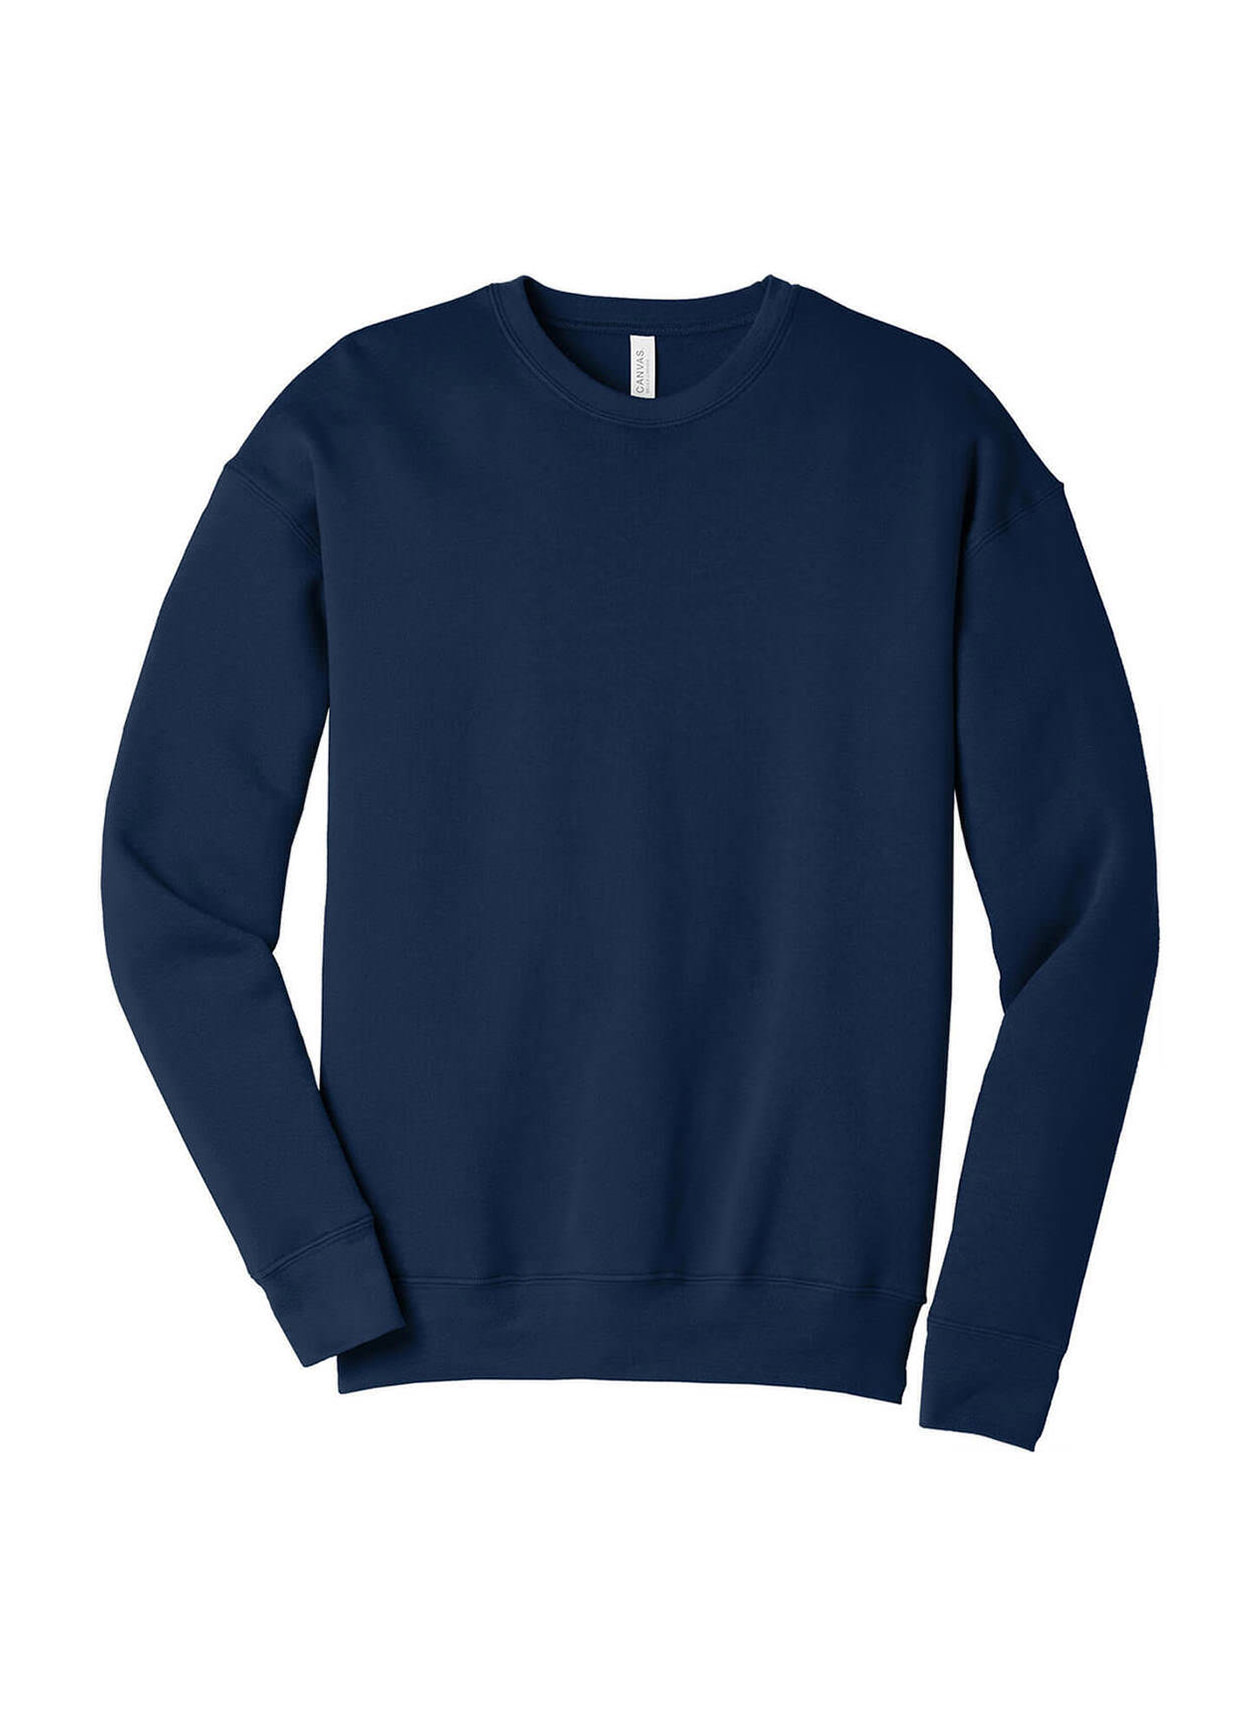 Bella + Canvas Men's Navy Drop Shoulder Fleece Sweatshirt